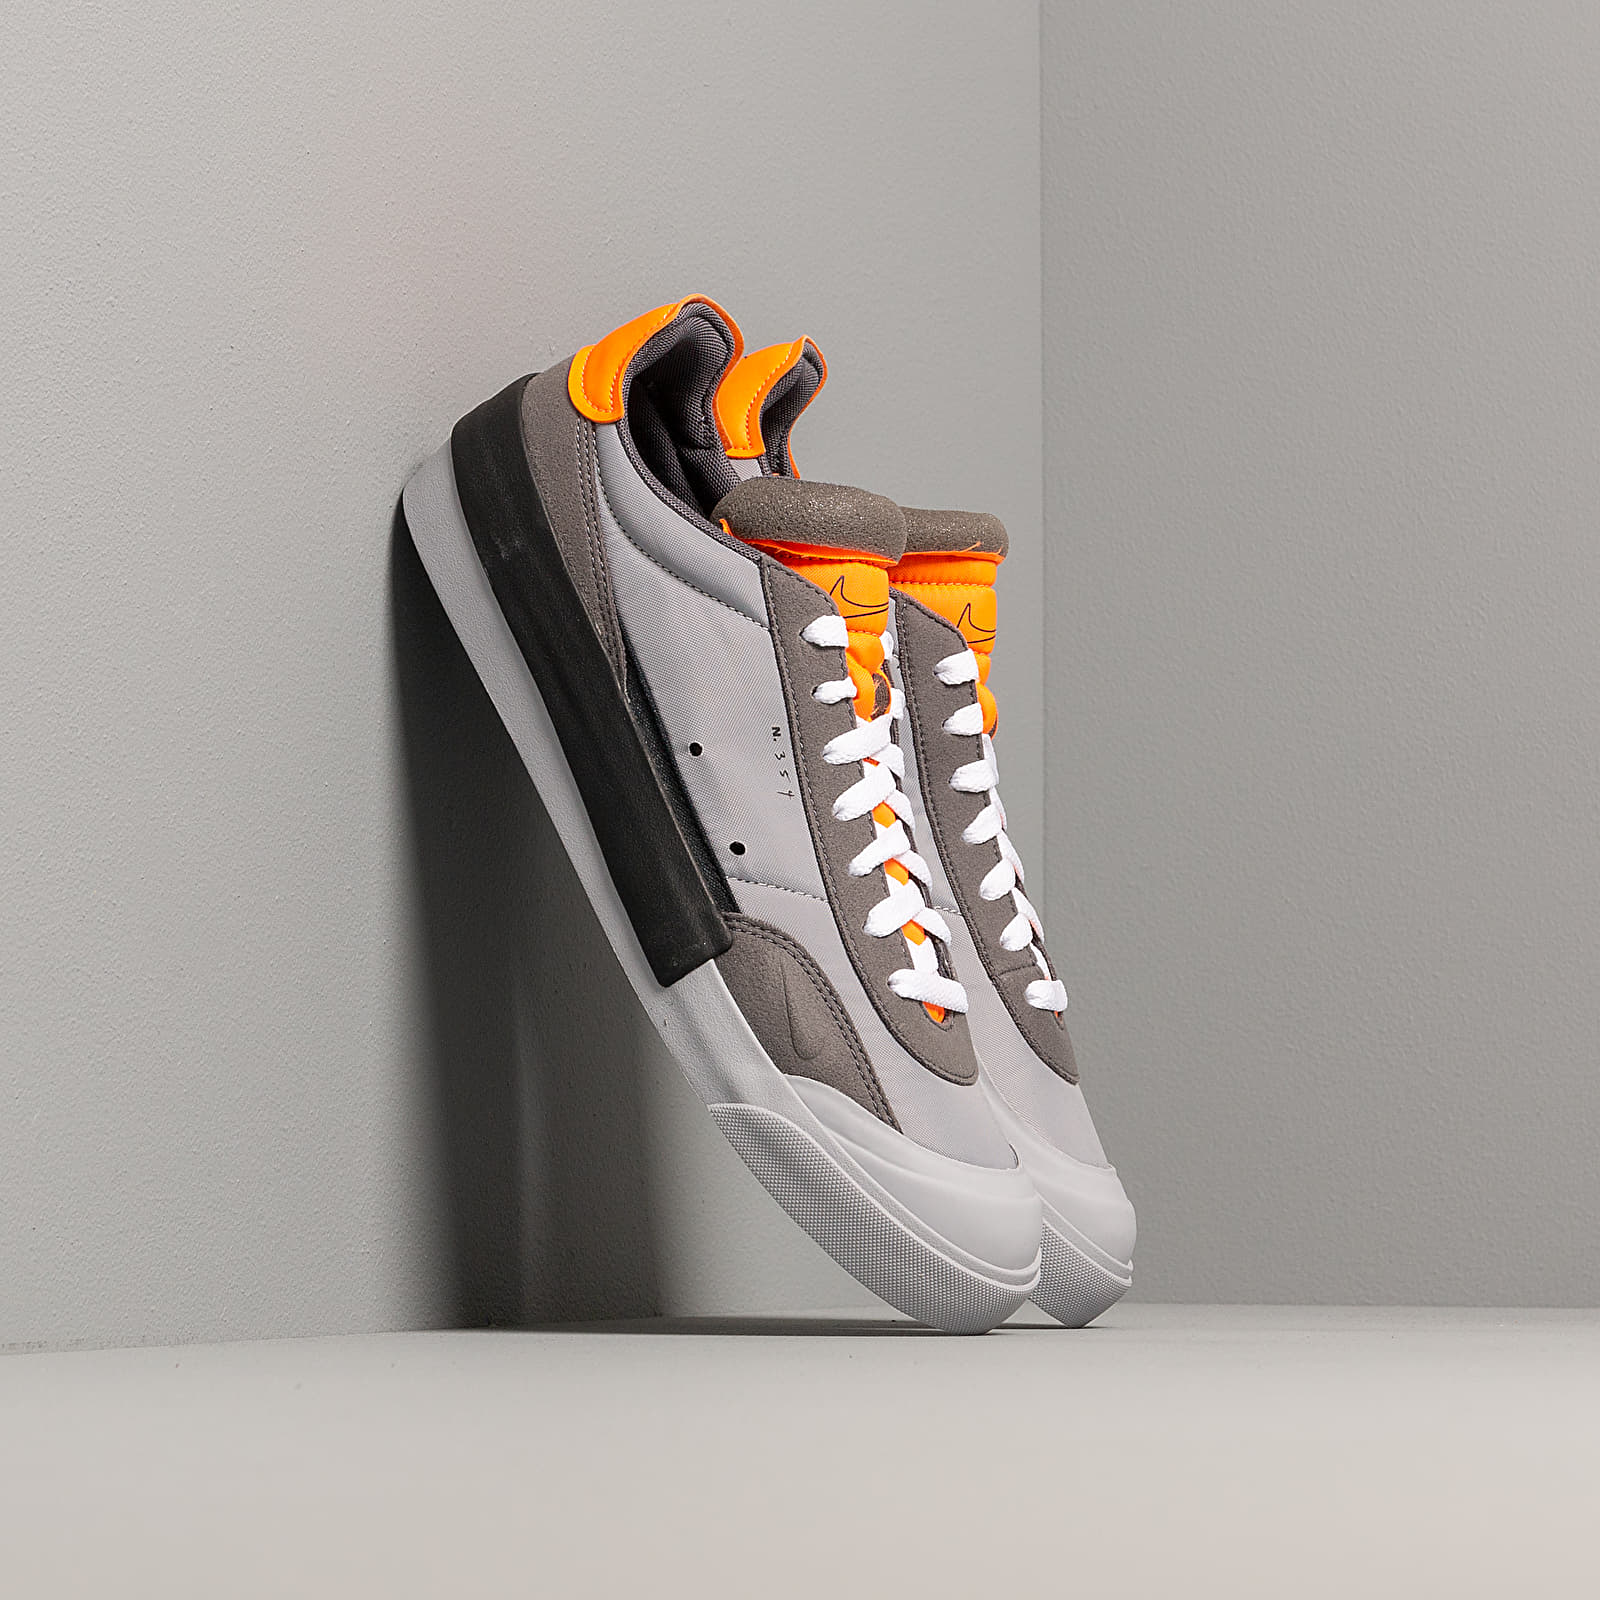 Zapatillas Hombre Nike Drop-Type Wolf Grey/ Black-Total Orange-Dark Grey